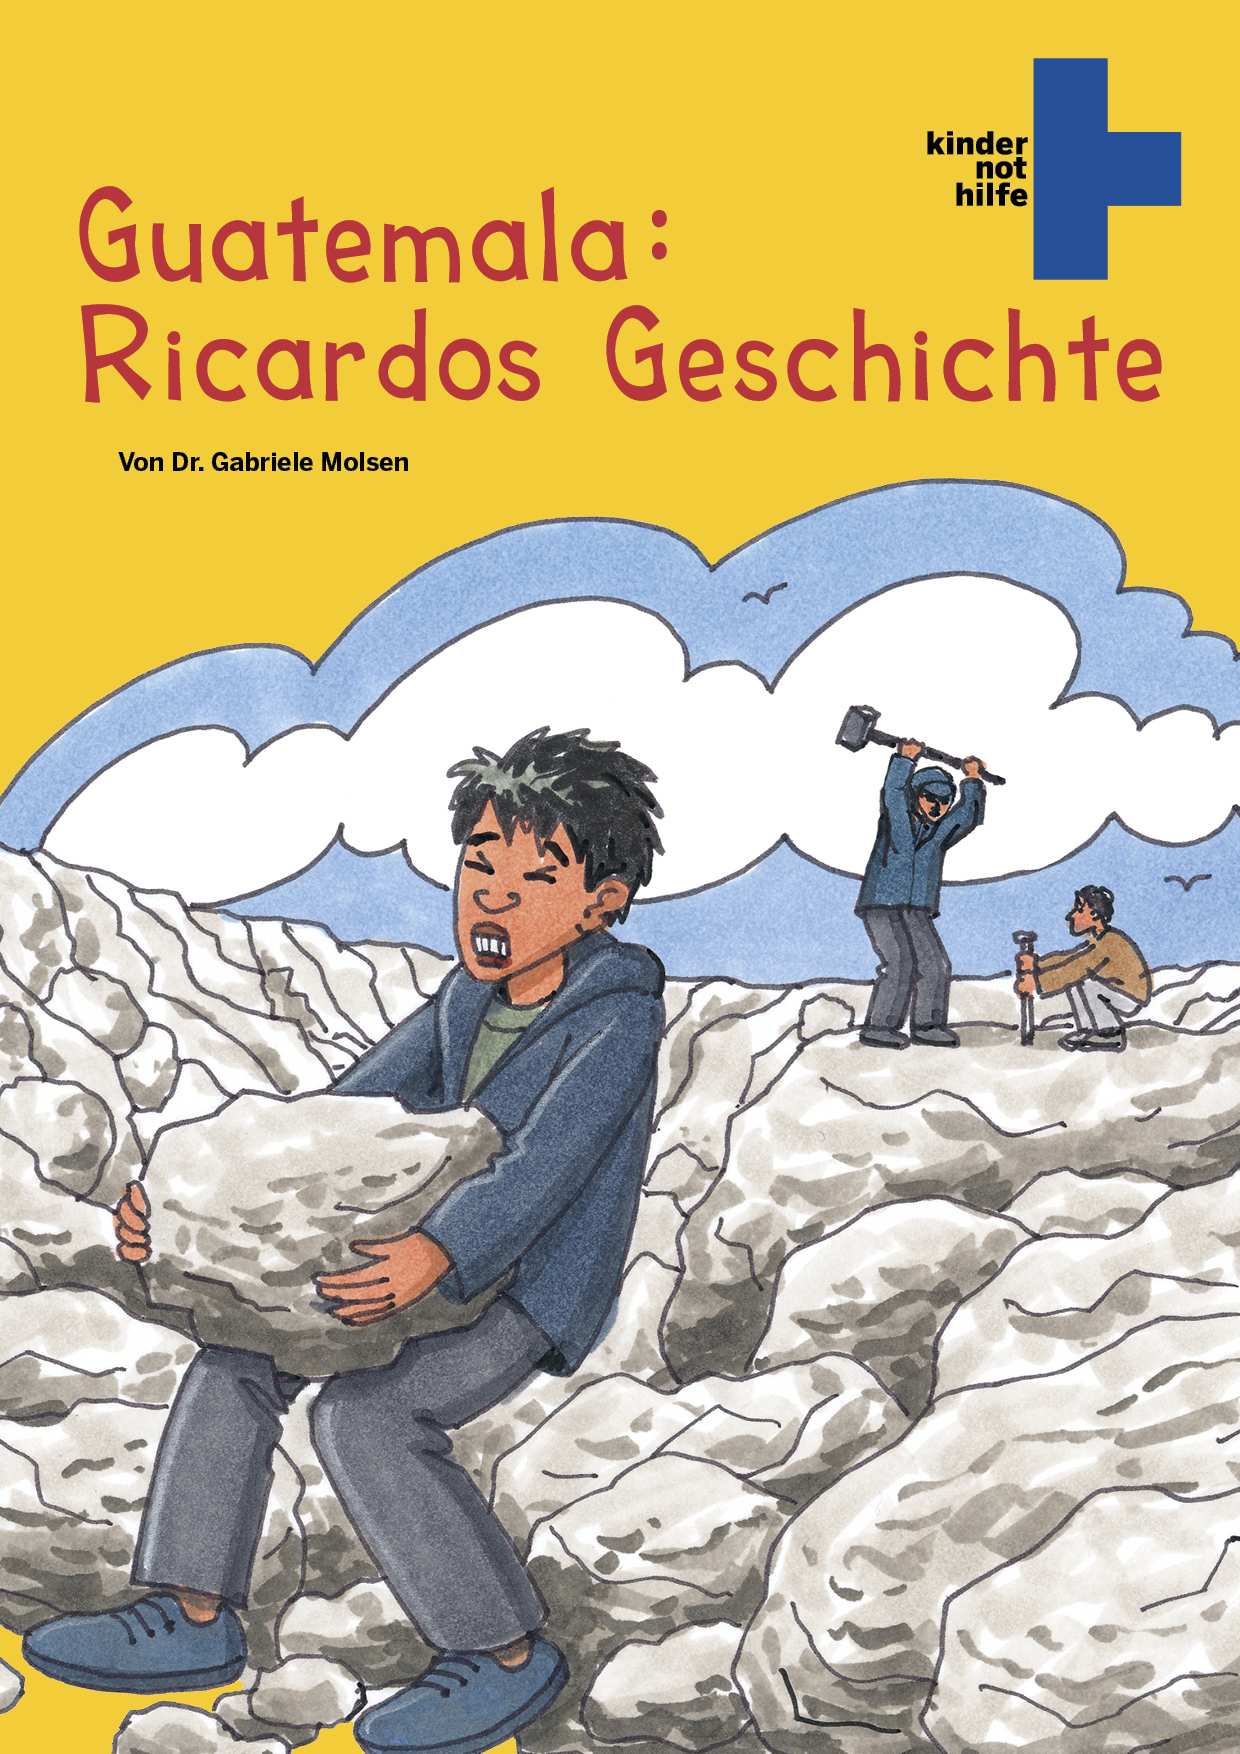 Titelseite von: Guatemala: Ricardos Geschichte (Quelle: Peter Laux)